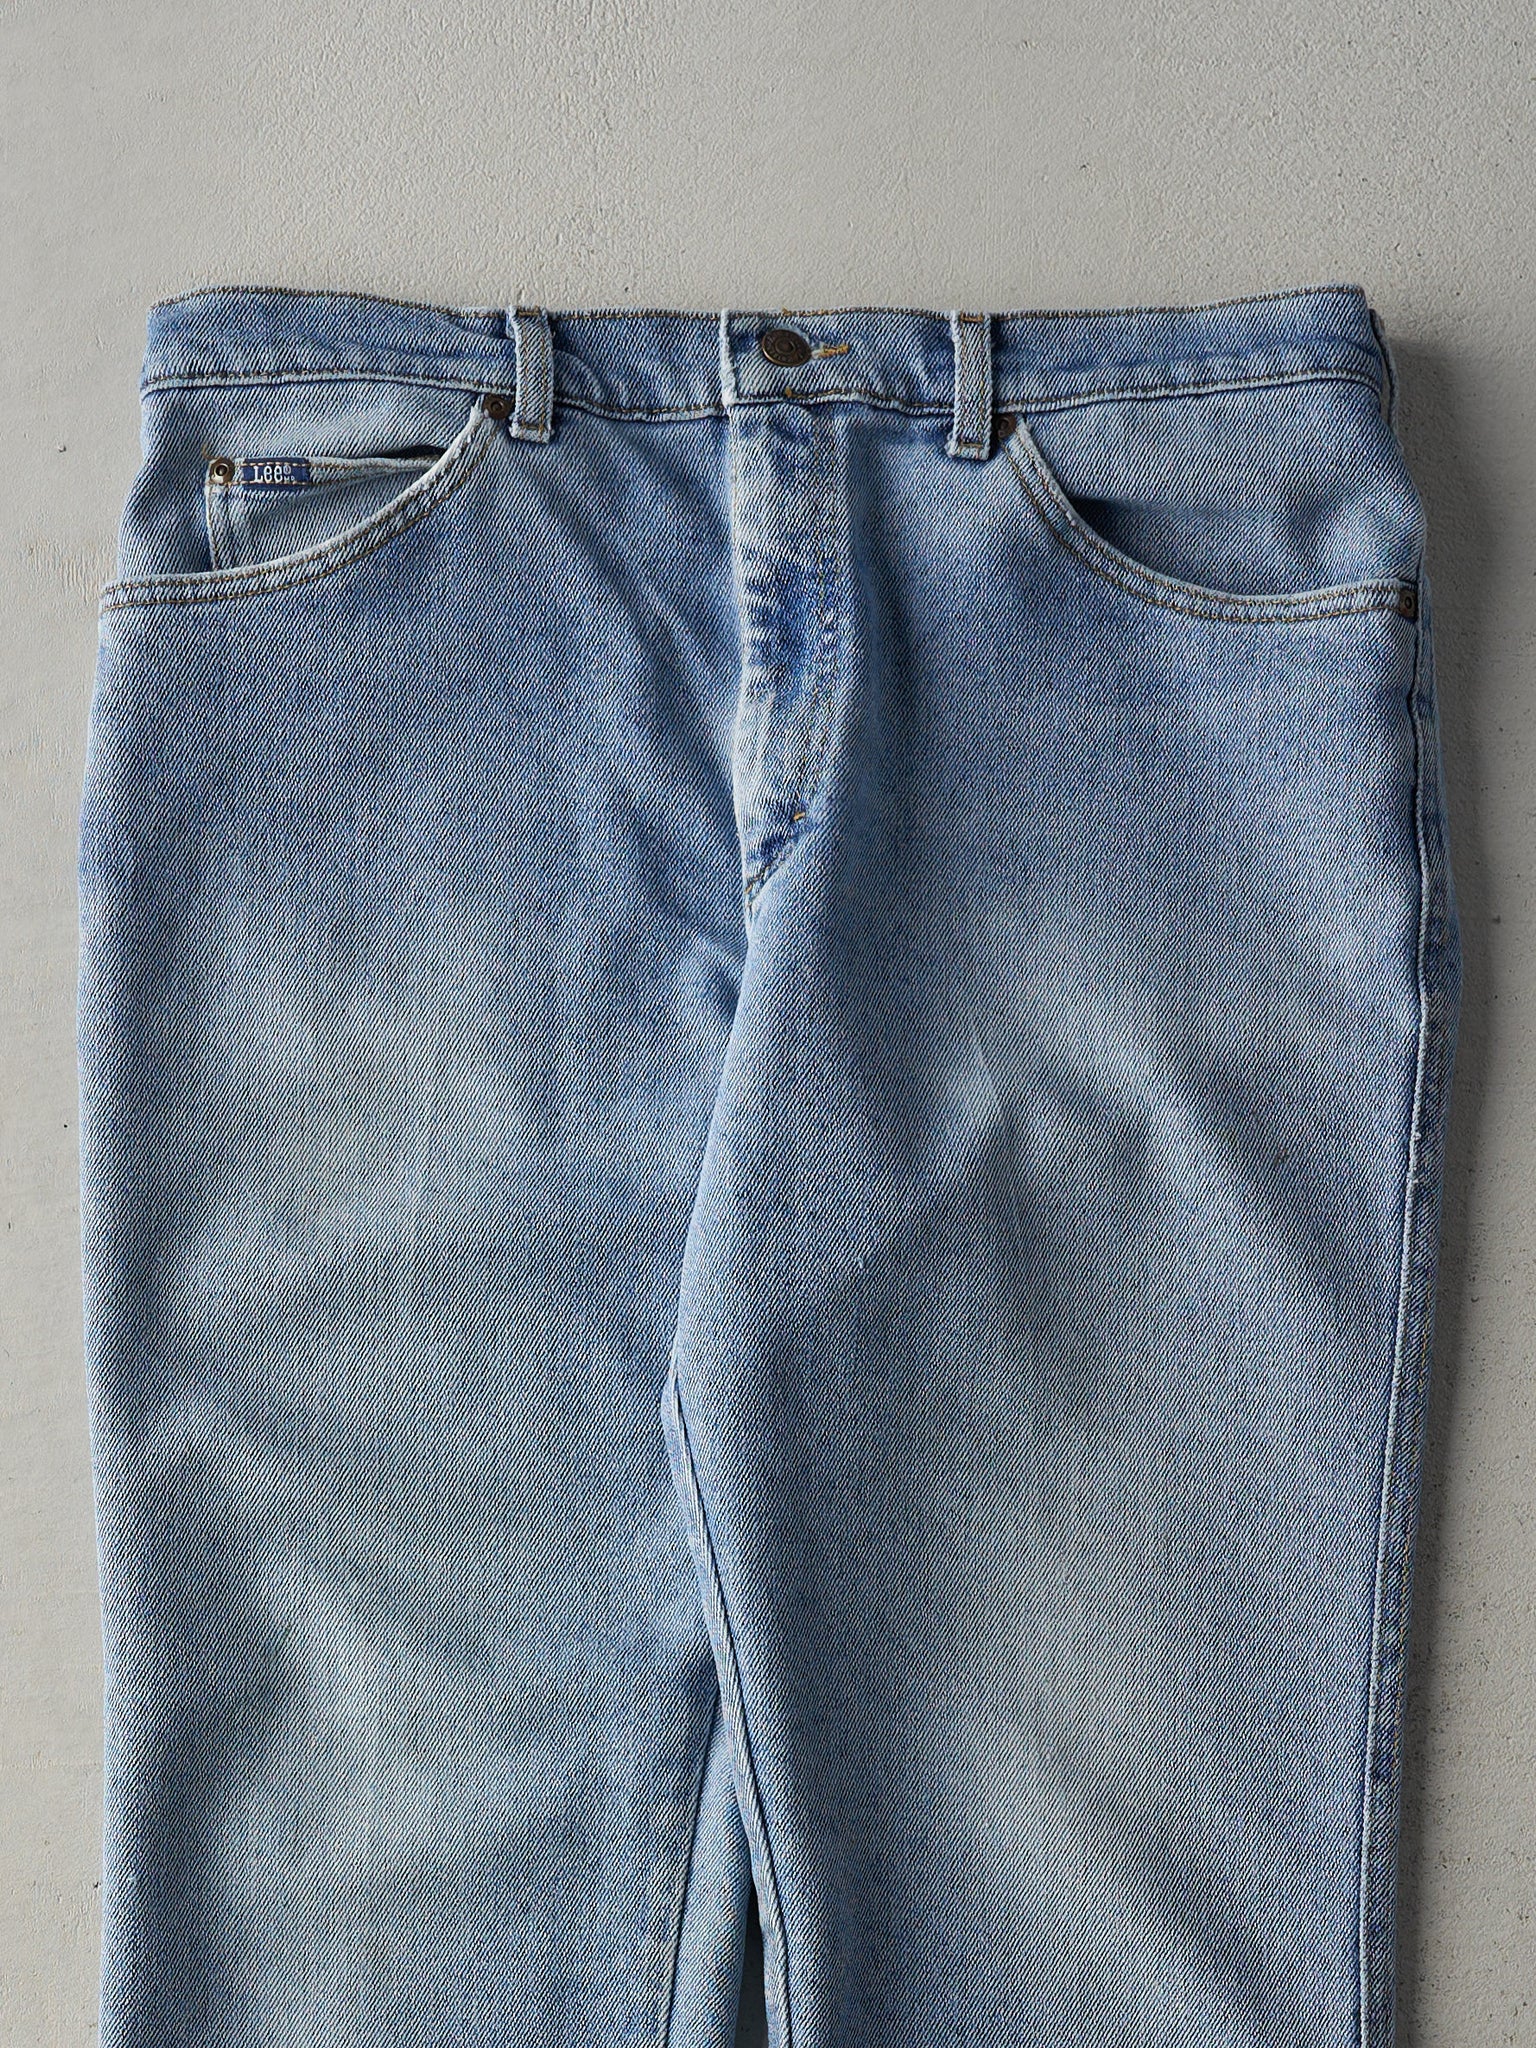 Vintage 80s Light Wash Lee Jeans (34x30)